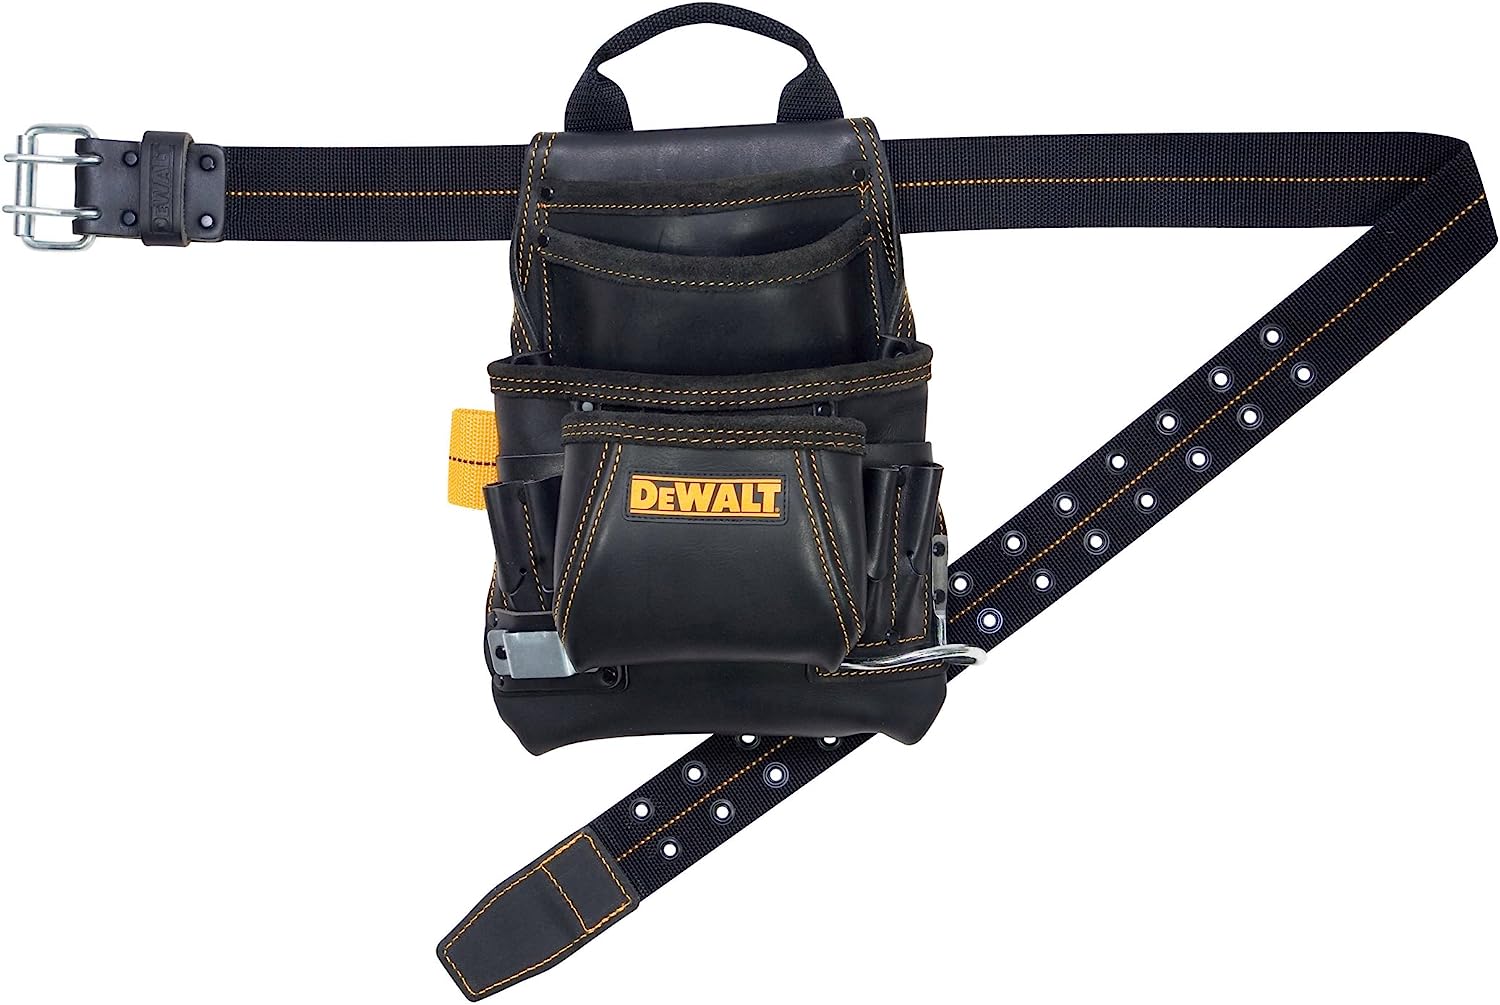 DeWALT Carpenter's Leather 10 Pocket Nail and Tool Bag and Belt